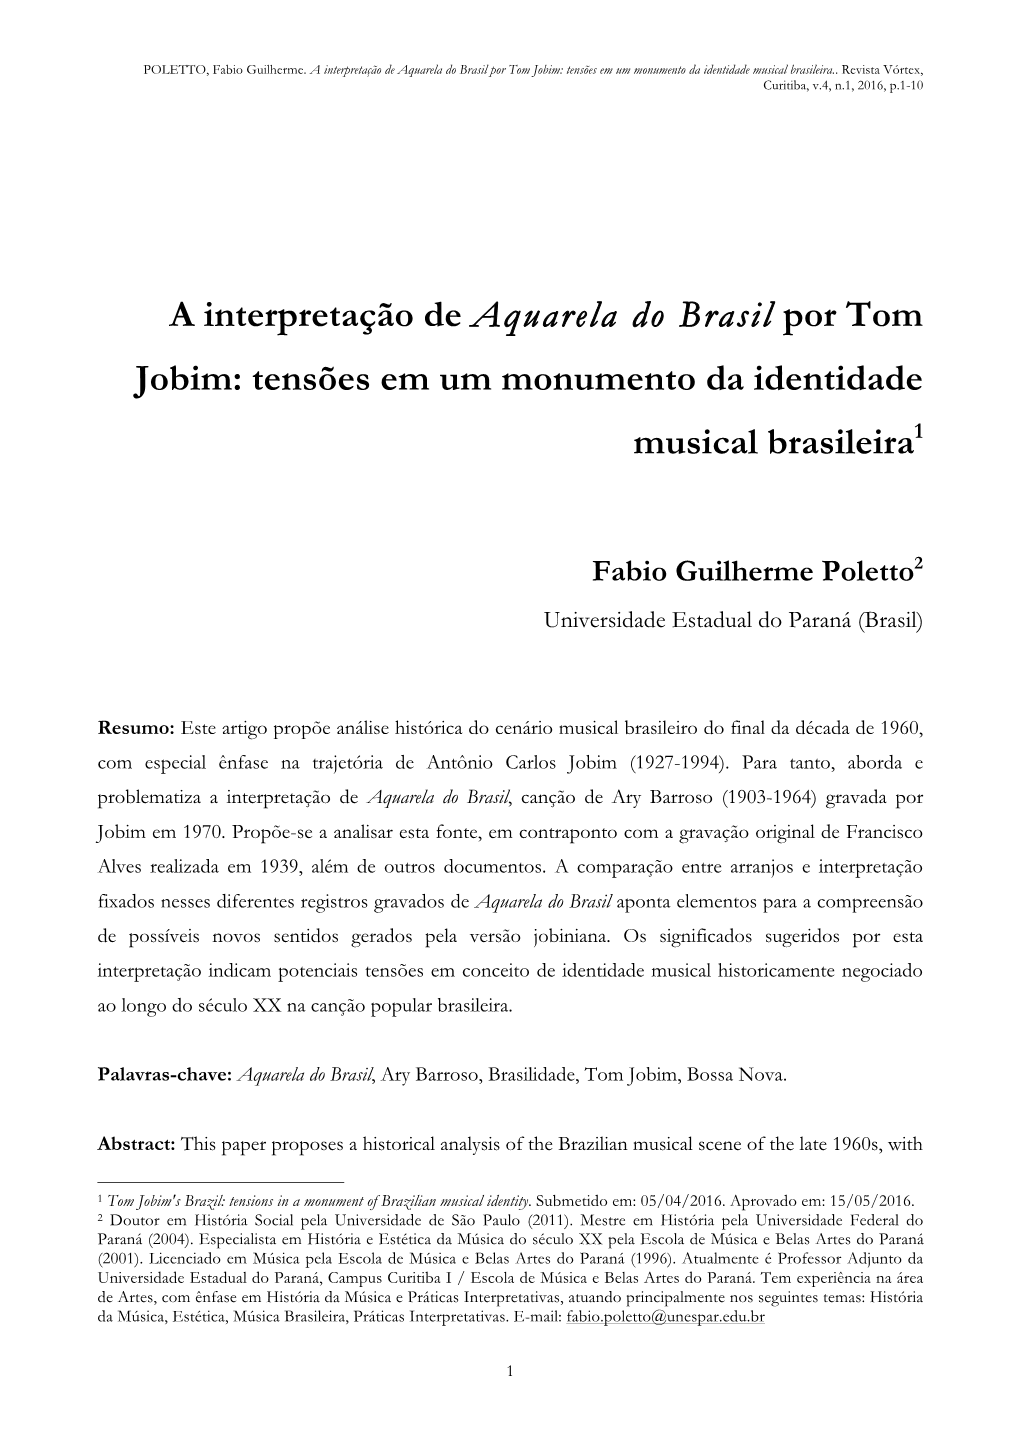 A Interpretação De Aquarela Do Brasil Por Tom Jobim: Tensões Em Um Monumento Da Identidade Musical Brasileira